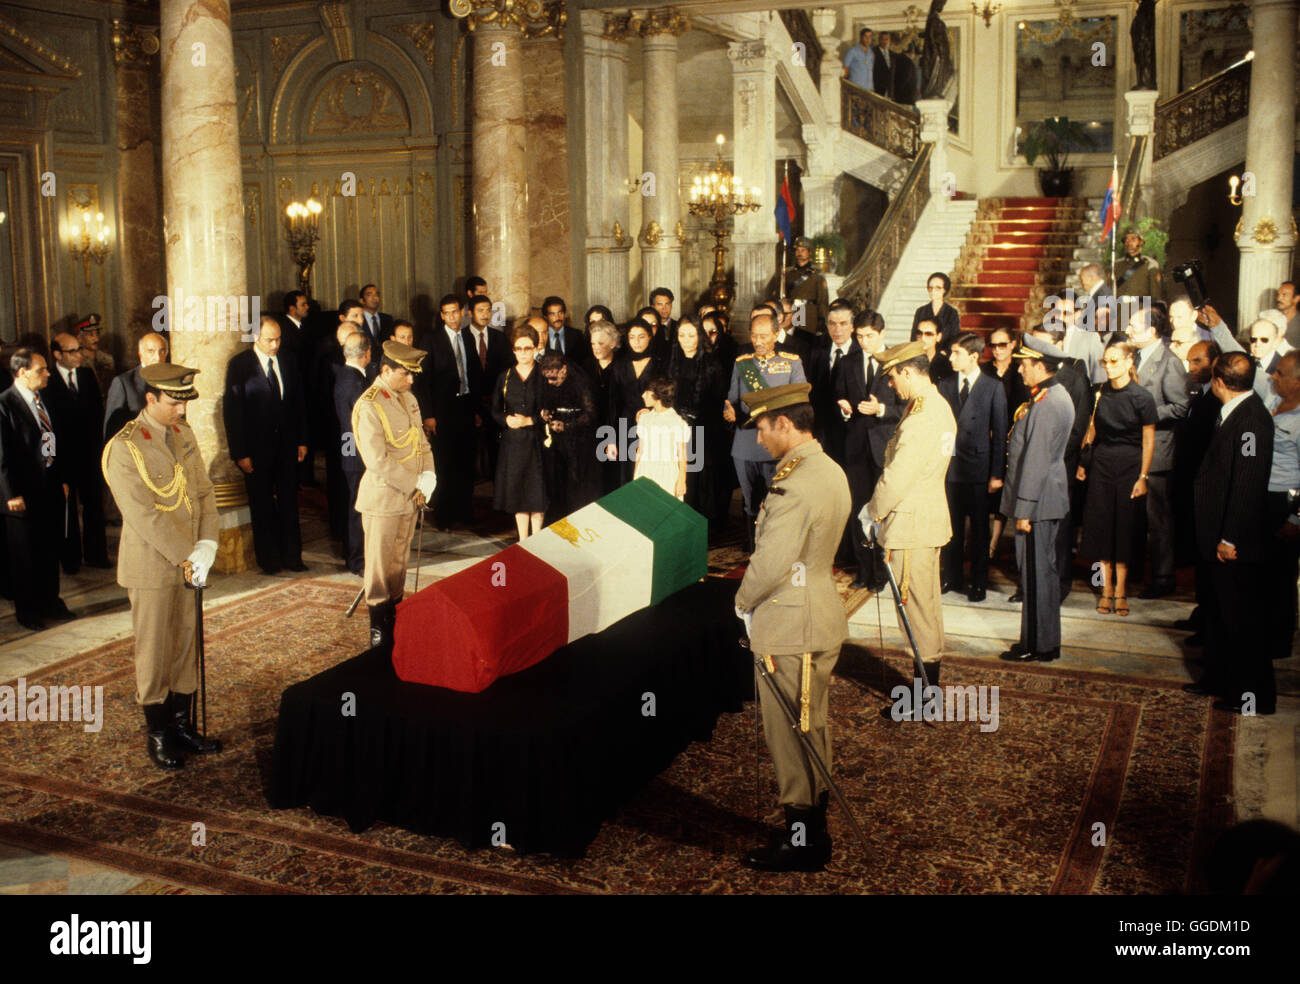 Schah von Iran seine Staatsbegräbnis Kairo Ägypten. Mohammad Reza Pahlavi, auch als Mohammad Reza Schah bekannt. Der Schah Witwe und Familie und Präsident Sadat 1980. Die Liegen im Zustand an der Abdin Palast. HOMER SYKES Stockfoto